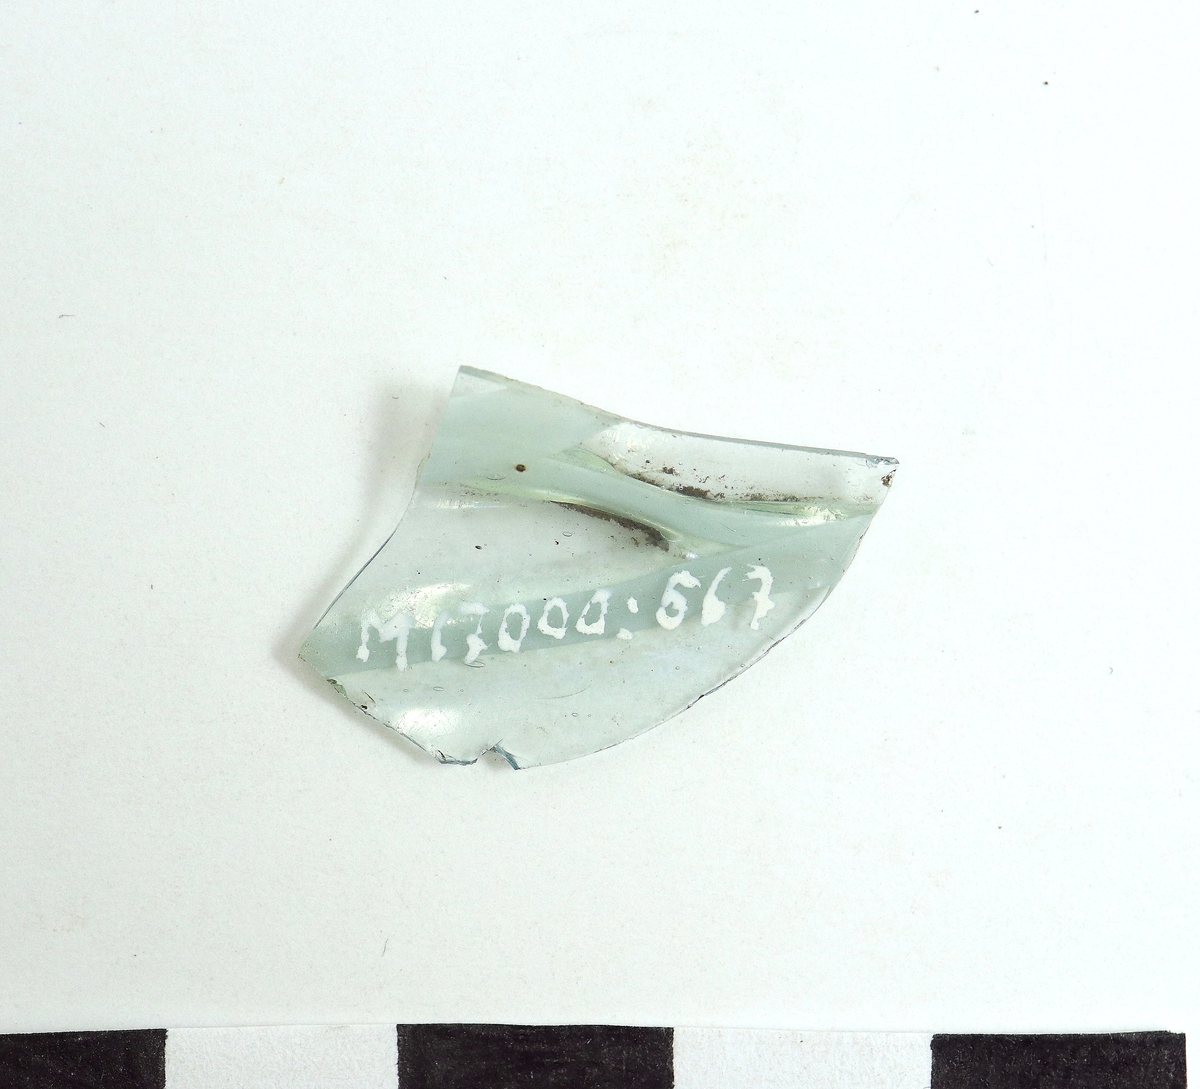 Ett ornerat venetianskt glas i svagt blå färg. På glaset finns två skikt pålagda vita trådar, (vetro a fili) i relief. Troligen samma eller liknande kärl som M 17000-565-566.